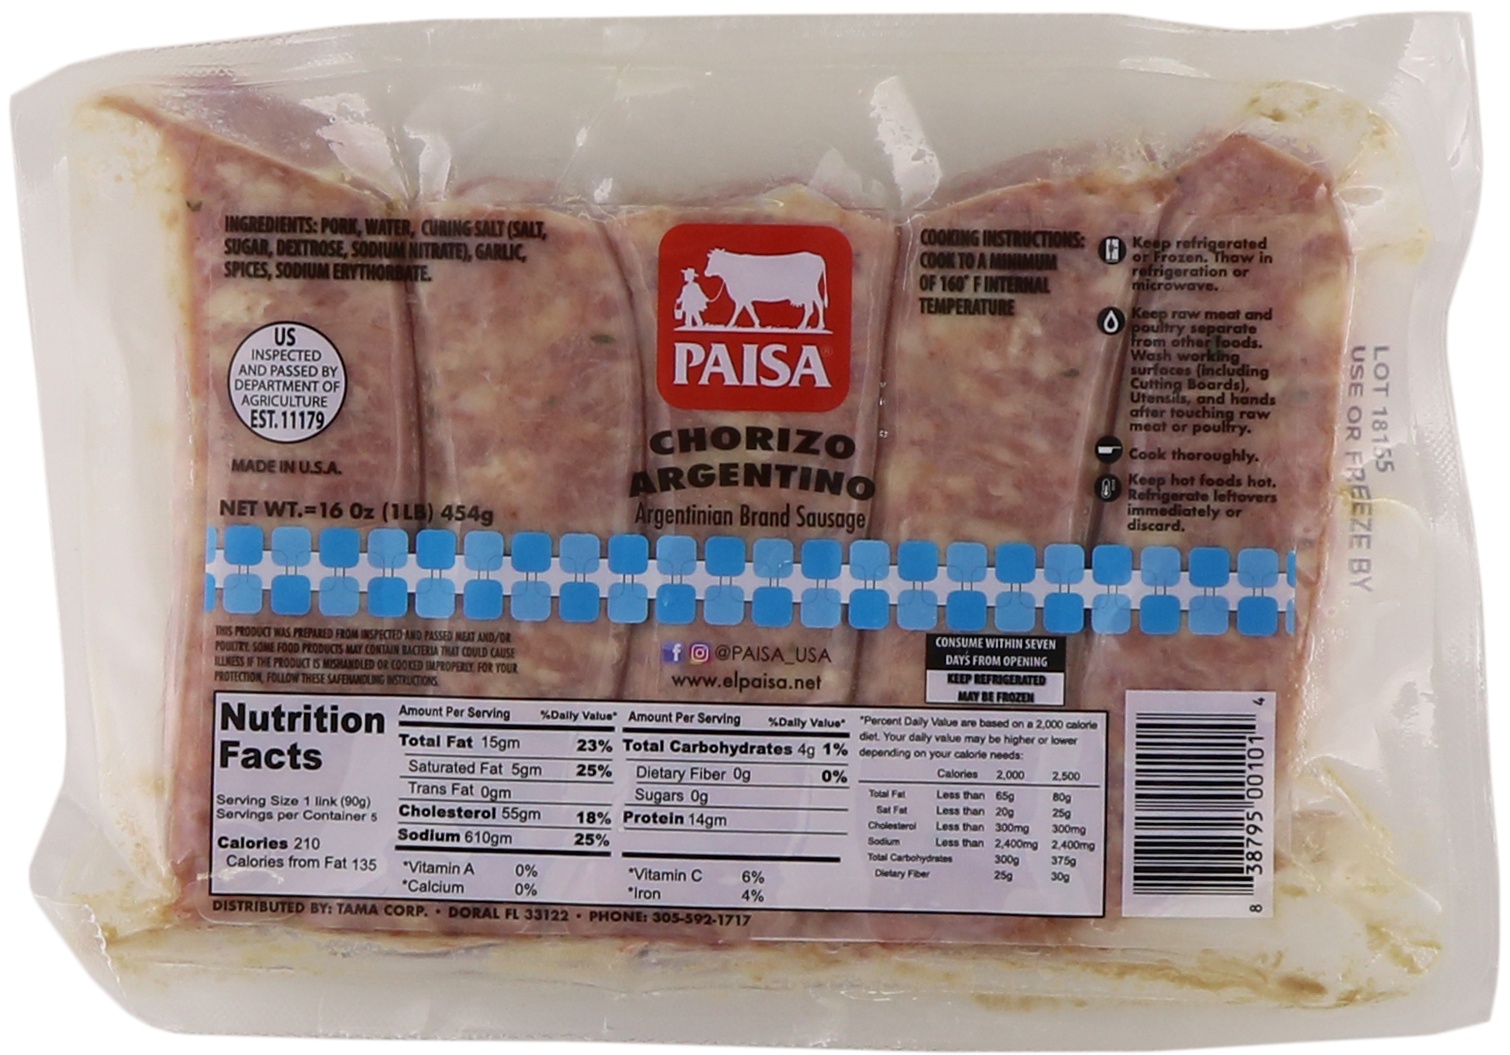 slide 1 of 1, PAISA Chorizo Argentino, 1 ct